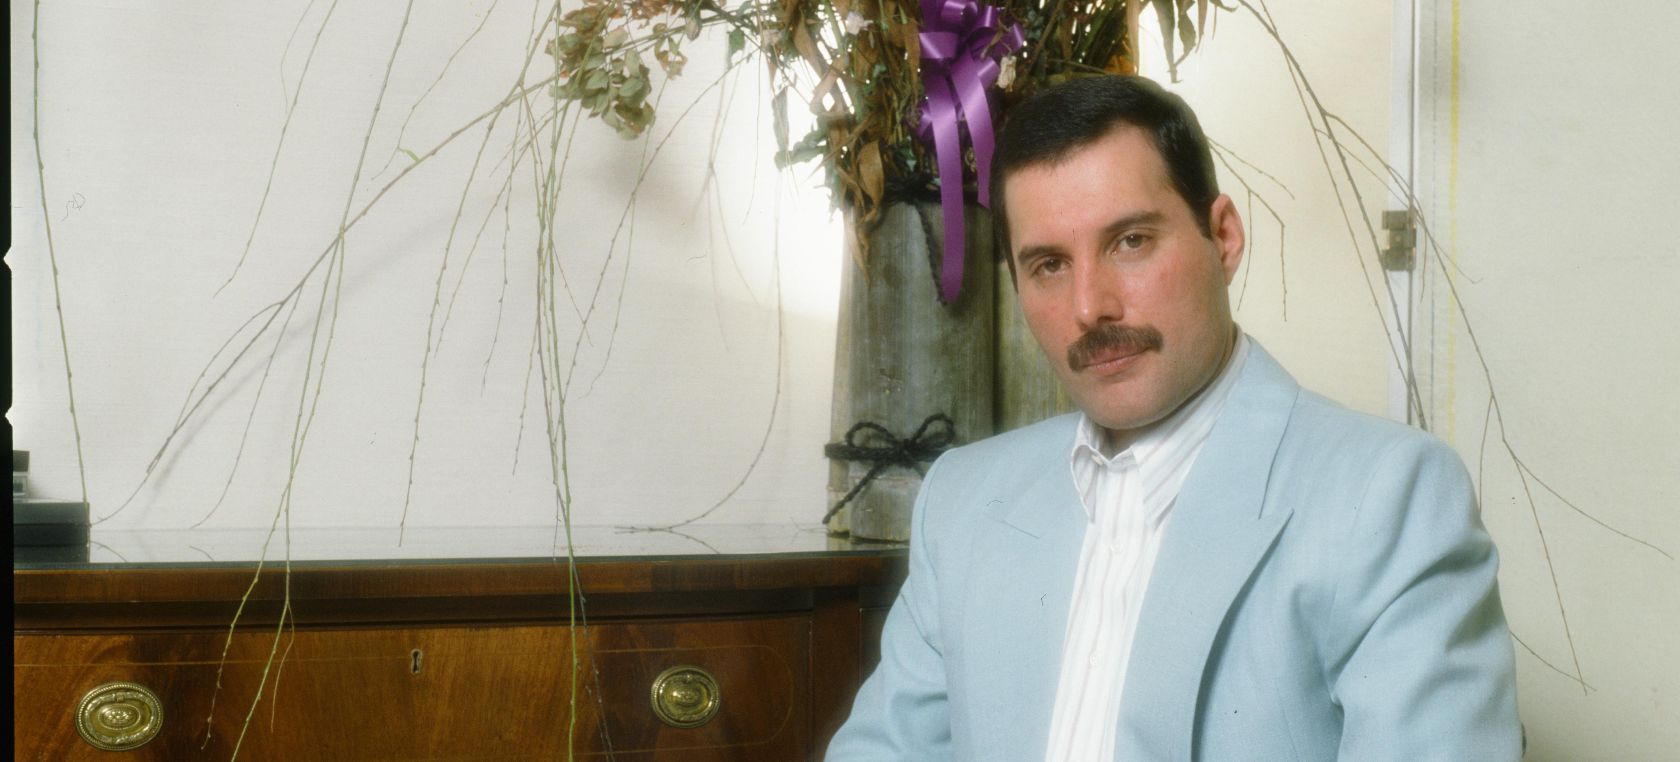 Freddie Mercury y ‘Love of my life’. ¿A quién dedicó su canción de amor definitiva?